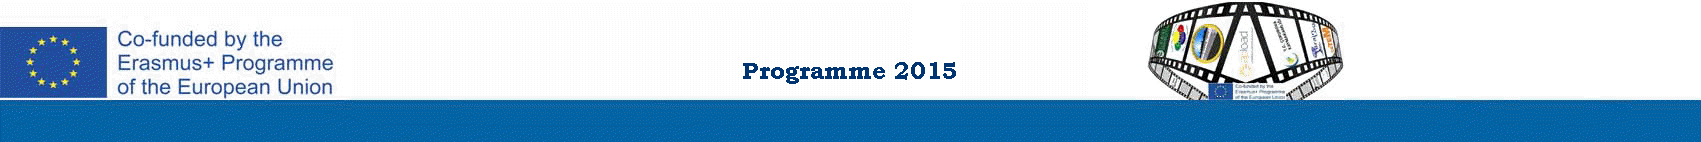 Programme 2015